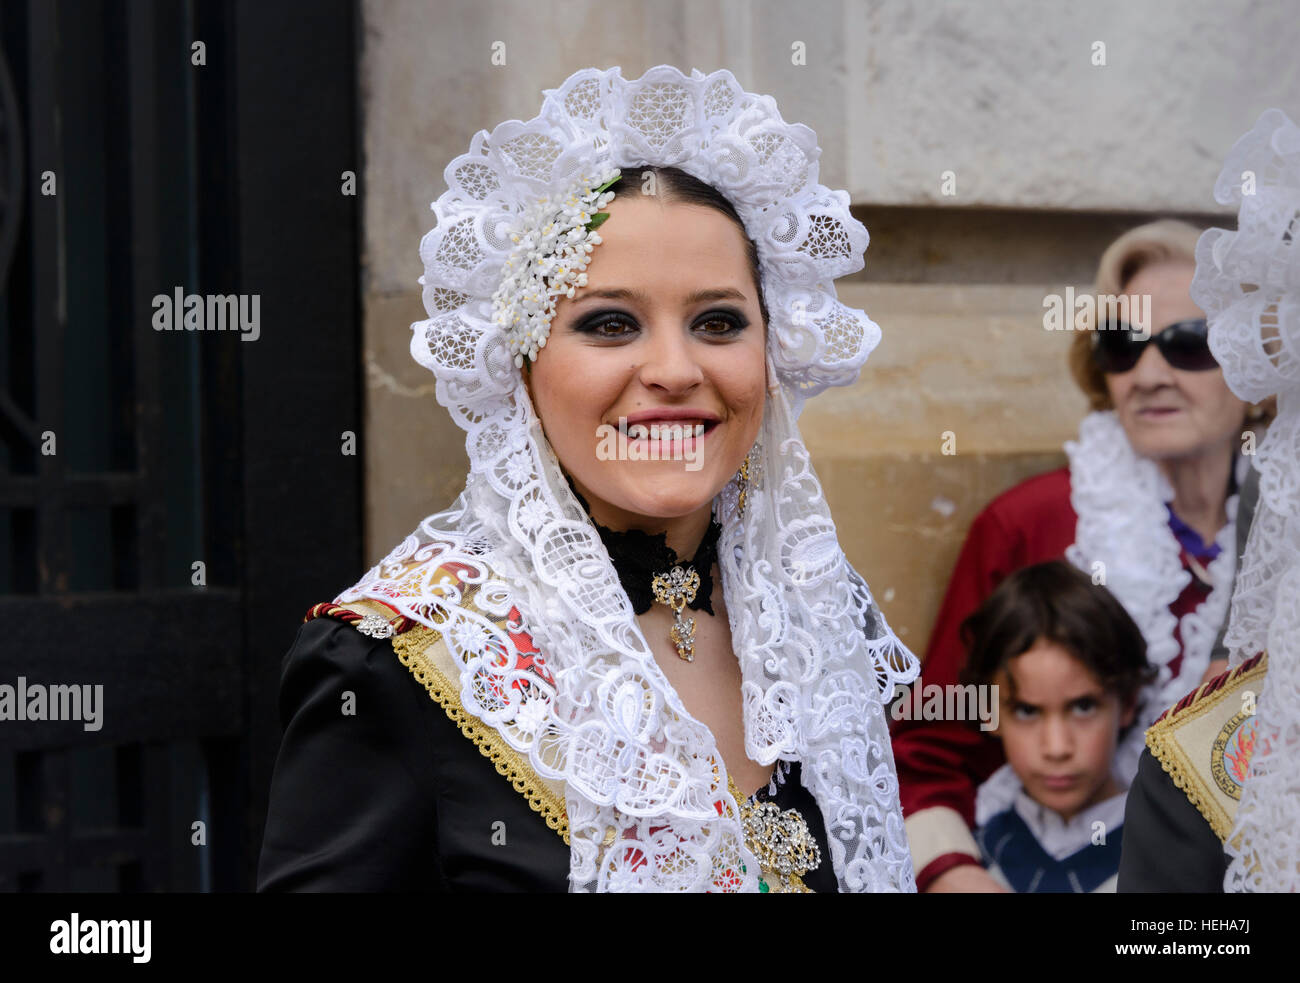 La ragazza spagnola in costume tradizionale compresi i pizzi mantilla velo o scialle durante Las Fallas o Falles festival in Valencia Spagna Foto Stock